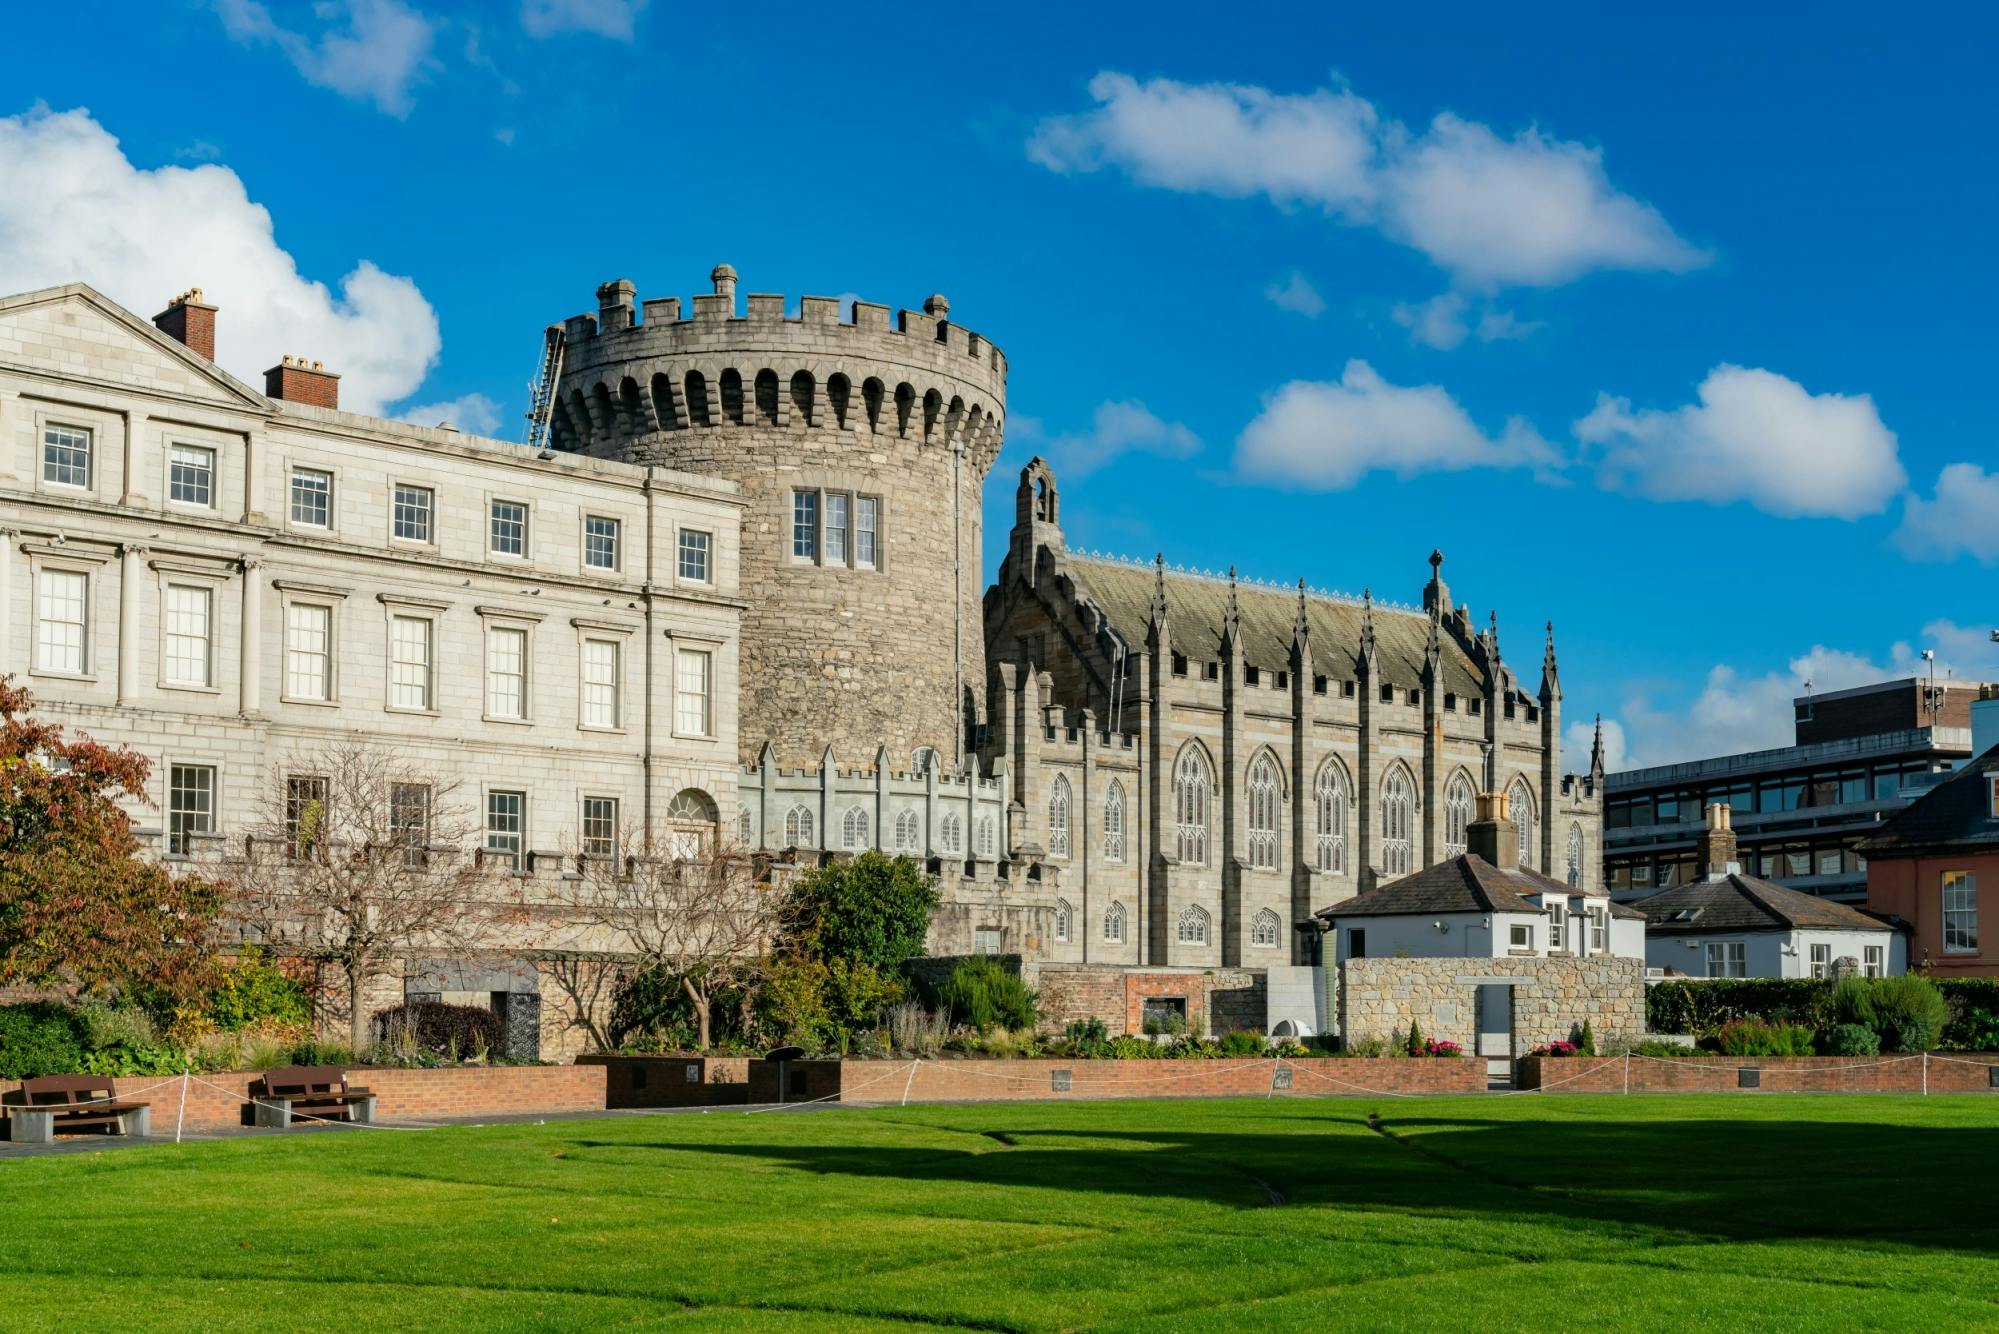 Visite privée personnalisée de Dublin avec un guide local : découvrez la ville de manière spontanée